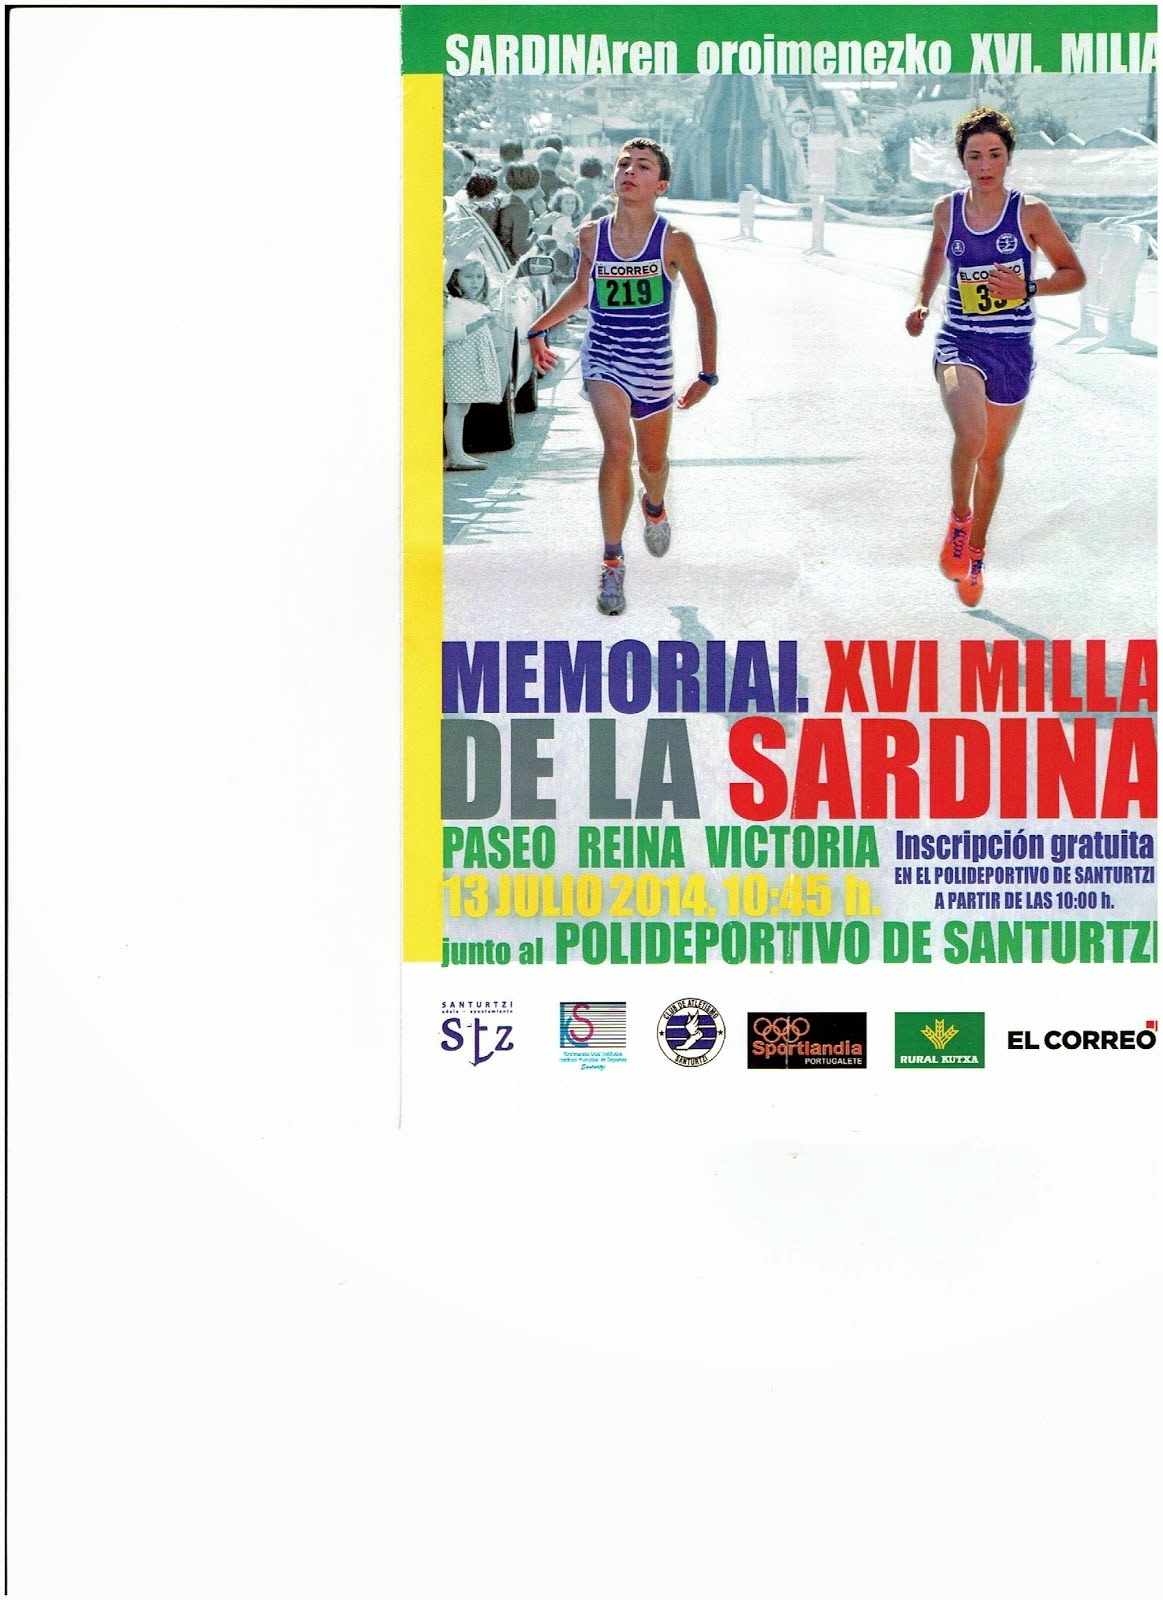 MILLA DE LA SARDINA"MEMORIAL"  2014